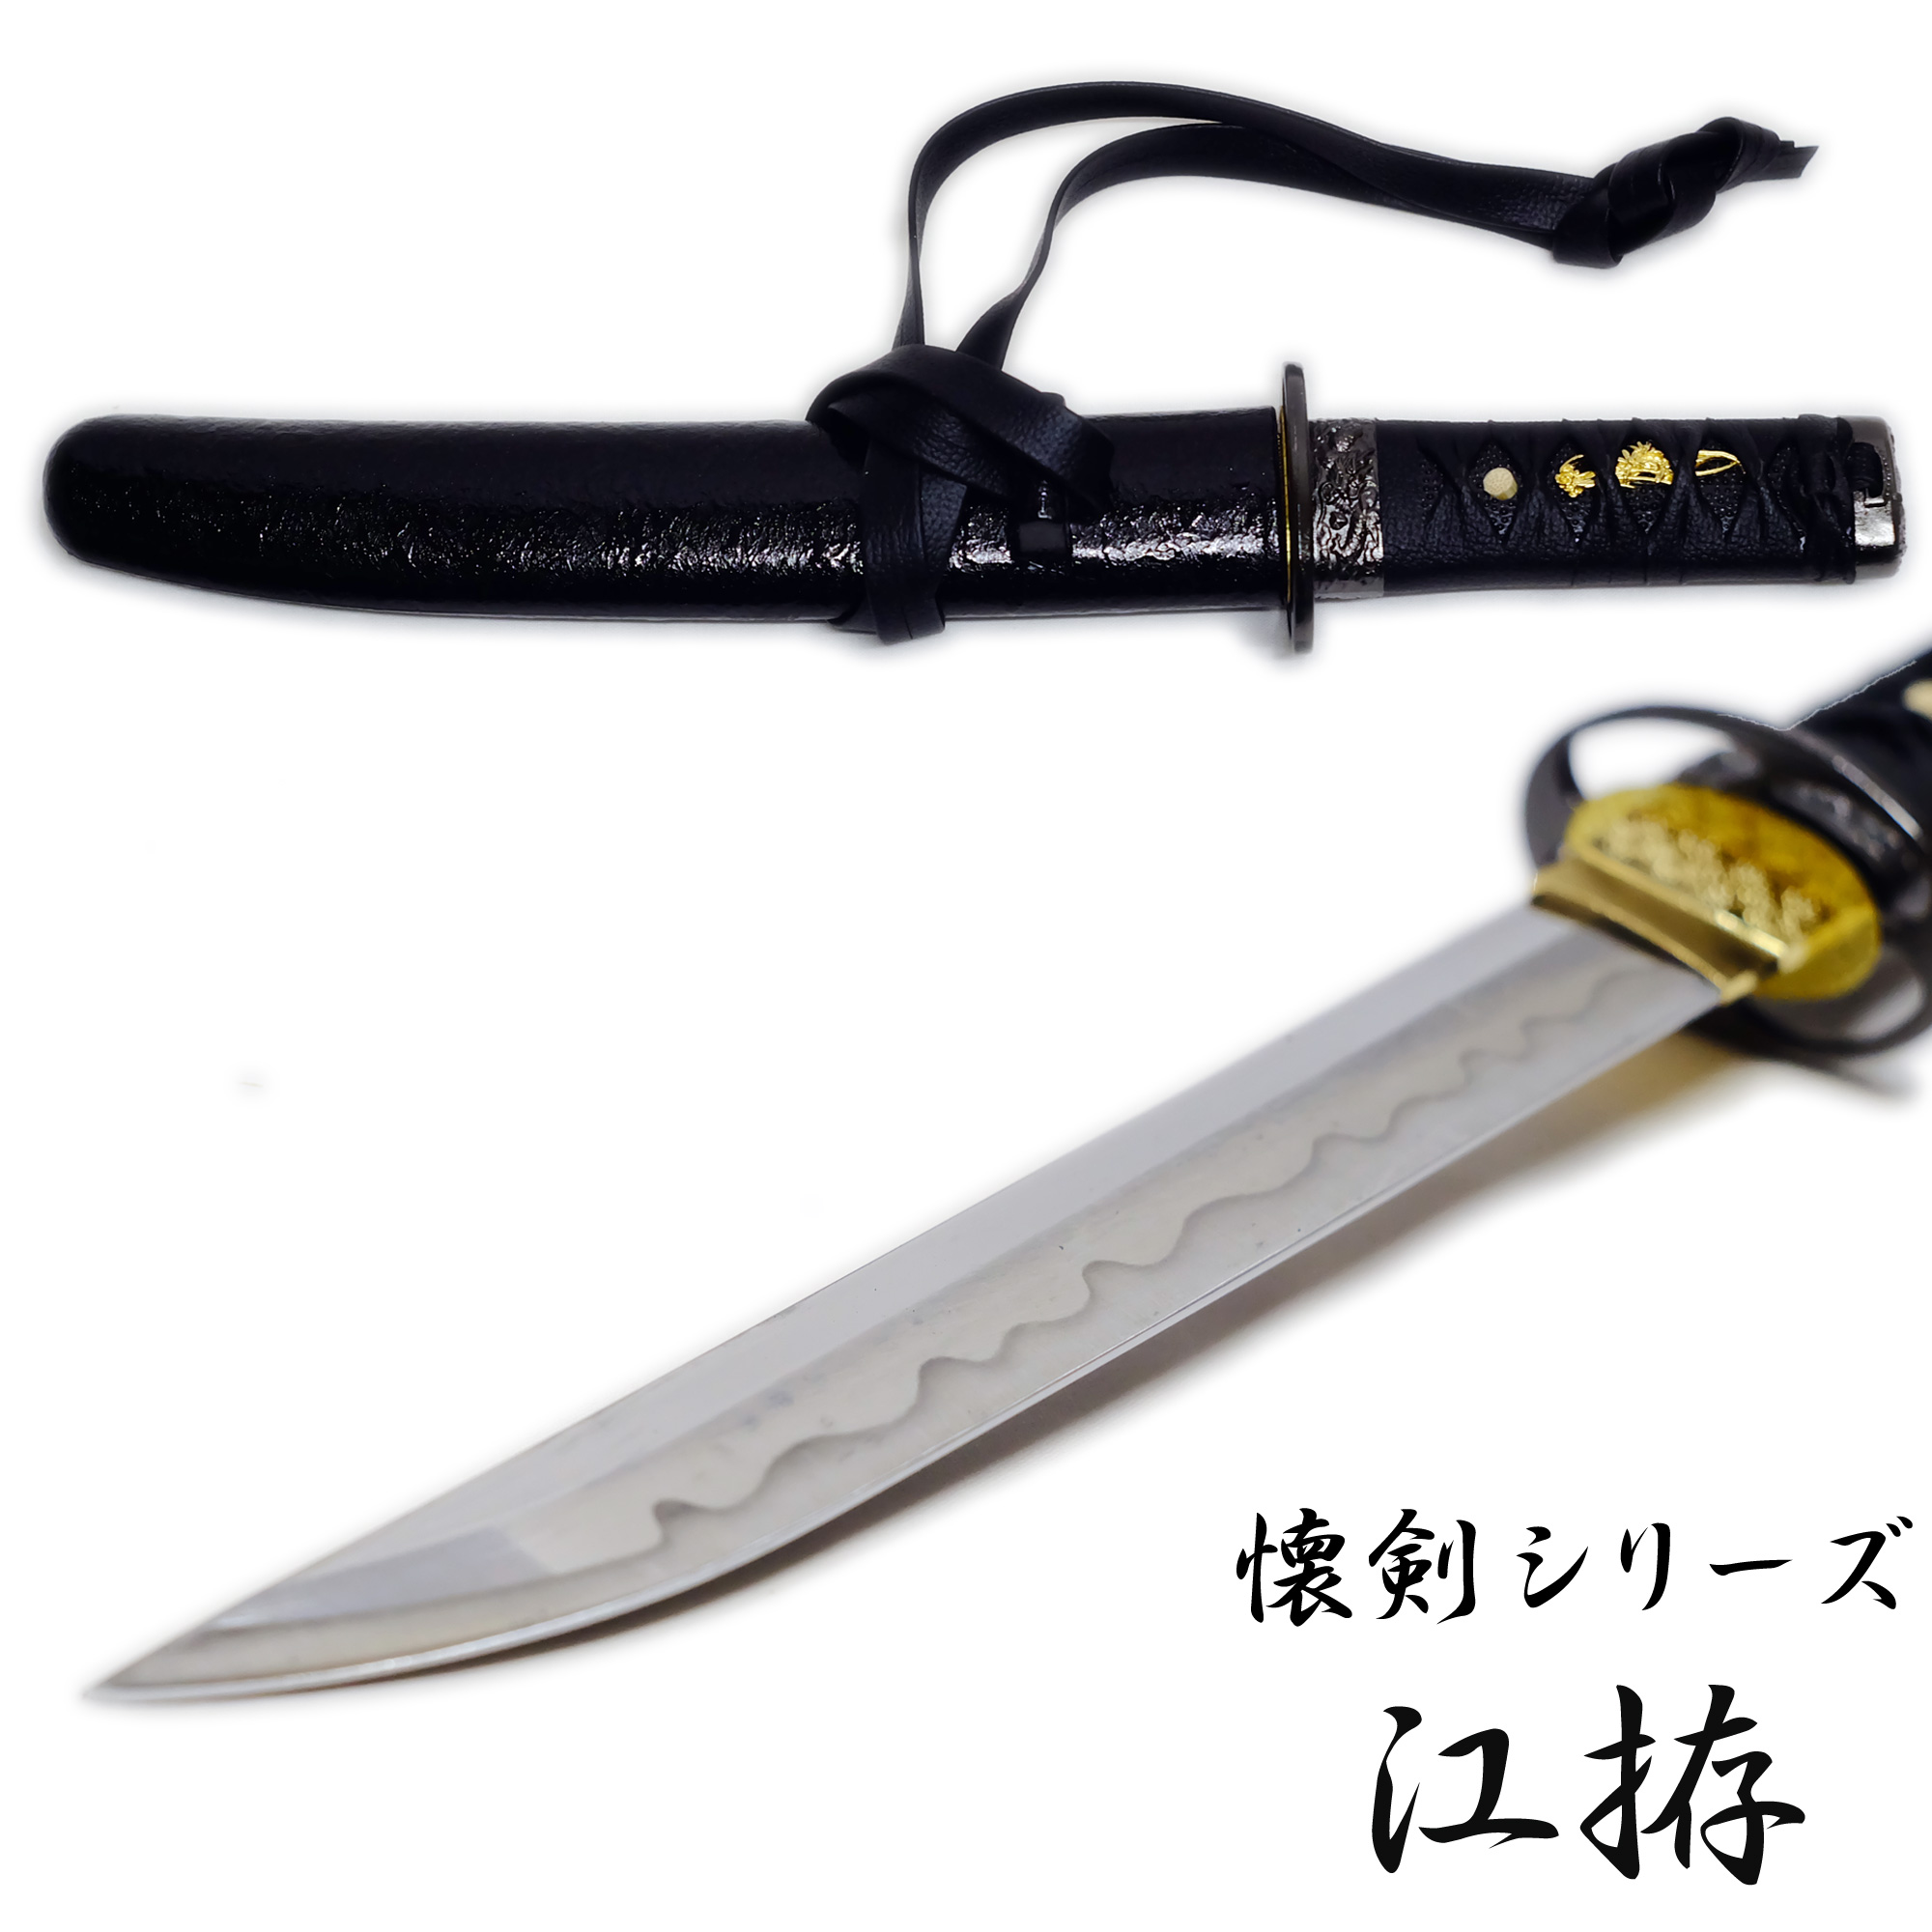 匠刀房 懐剣 江拵 NEU-100 – 懐剣シリーズ 模造刀 | 日光 匠家